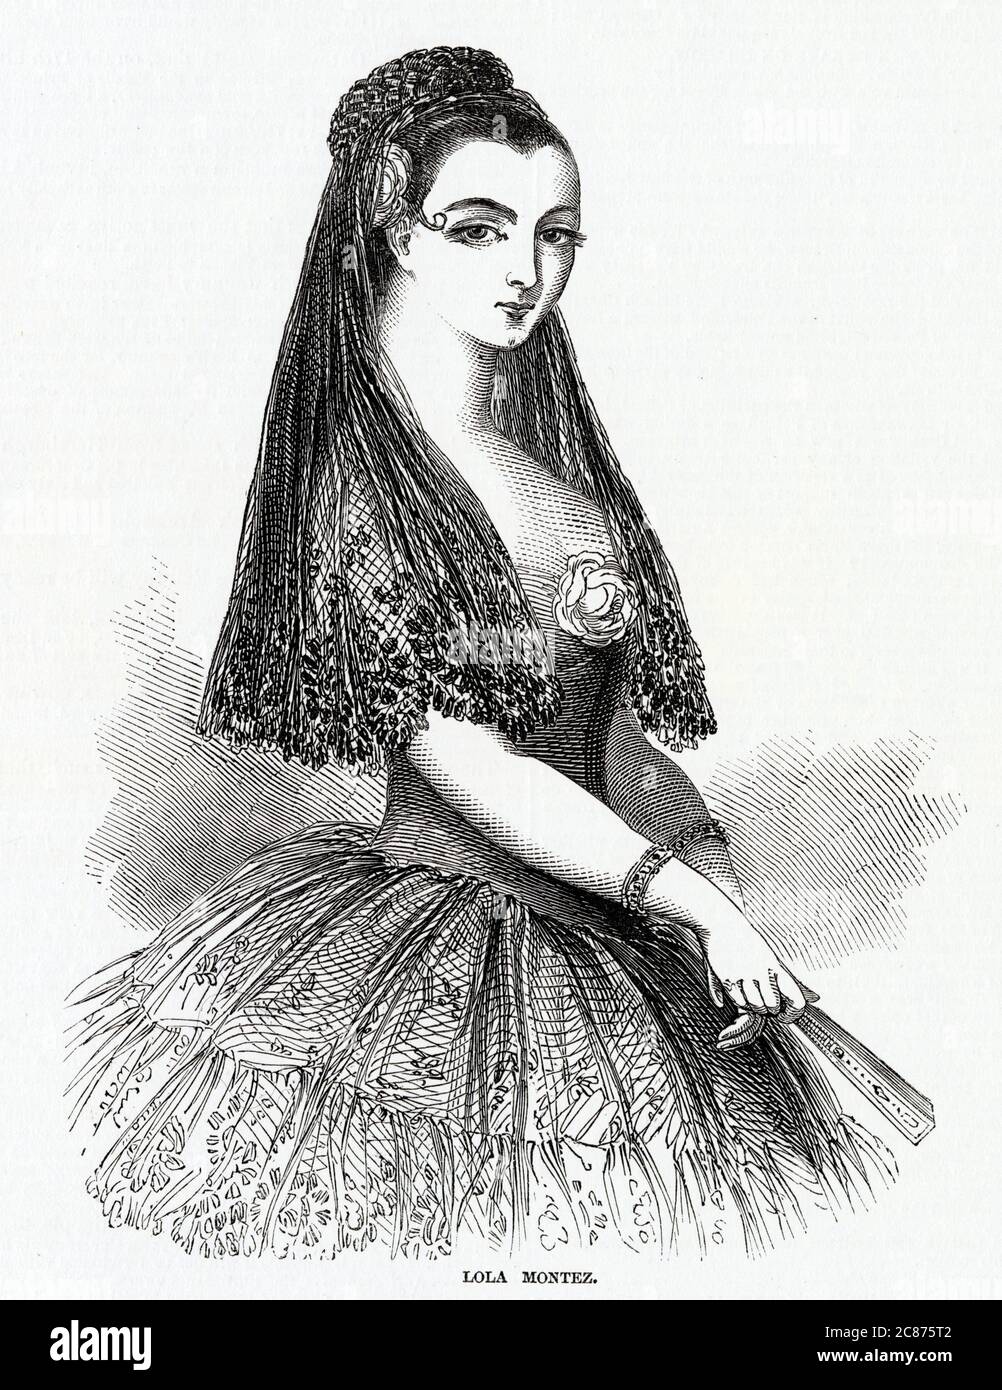 MARIA DOLORES ELIZA ROSEANNA GILBERT, bekannt als LOLA MONTEZ (1818 - 1861), amerikanische Tänzerin und Abenteurerin, geboren in Irland - hier in traditionellen spanischen Kostümen Stockfoto